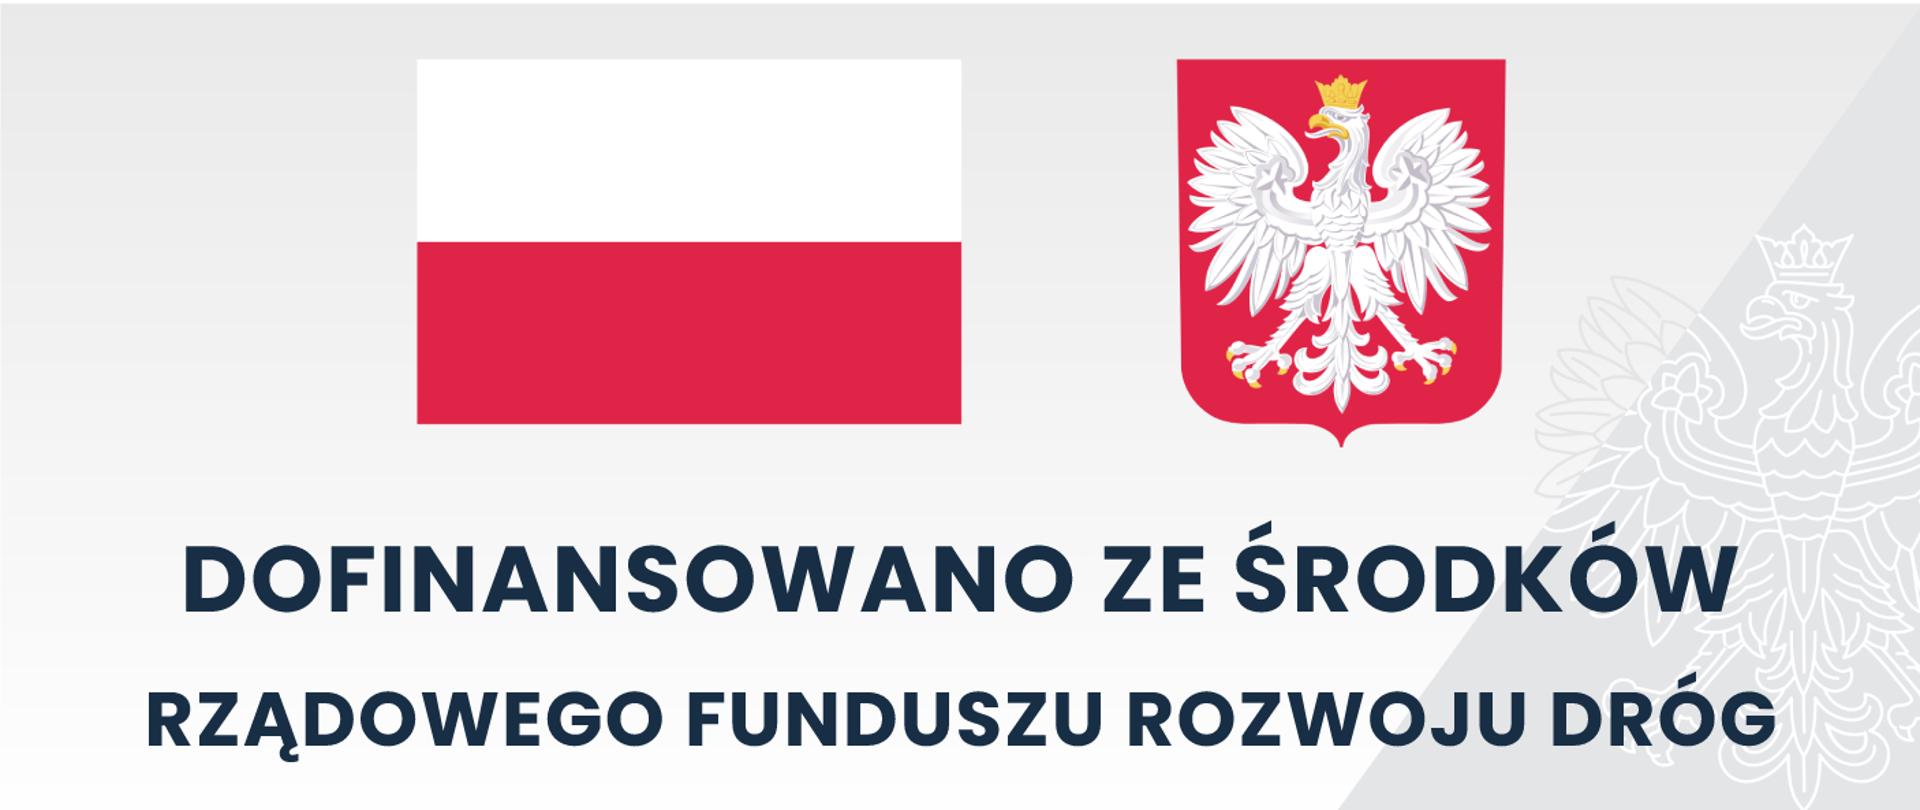 Szara tablica z flagą oraz godłem polskim z napisem dofinansowano ze środków Rządowego Funduszu Rozwoju Dróg